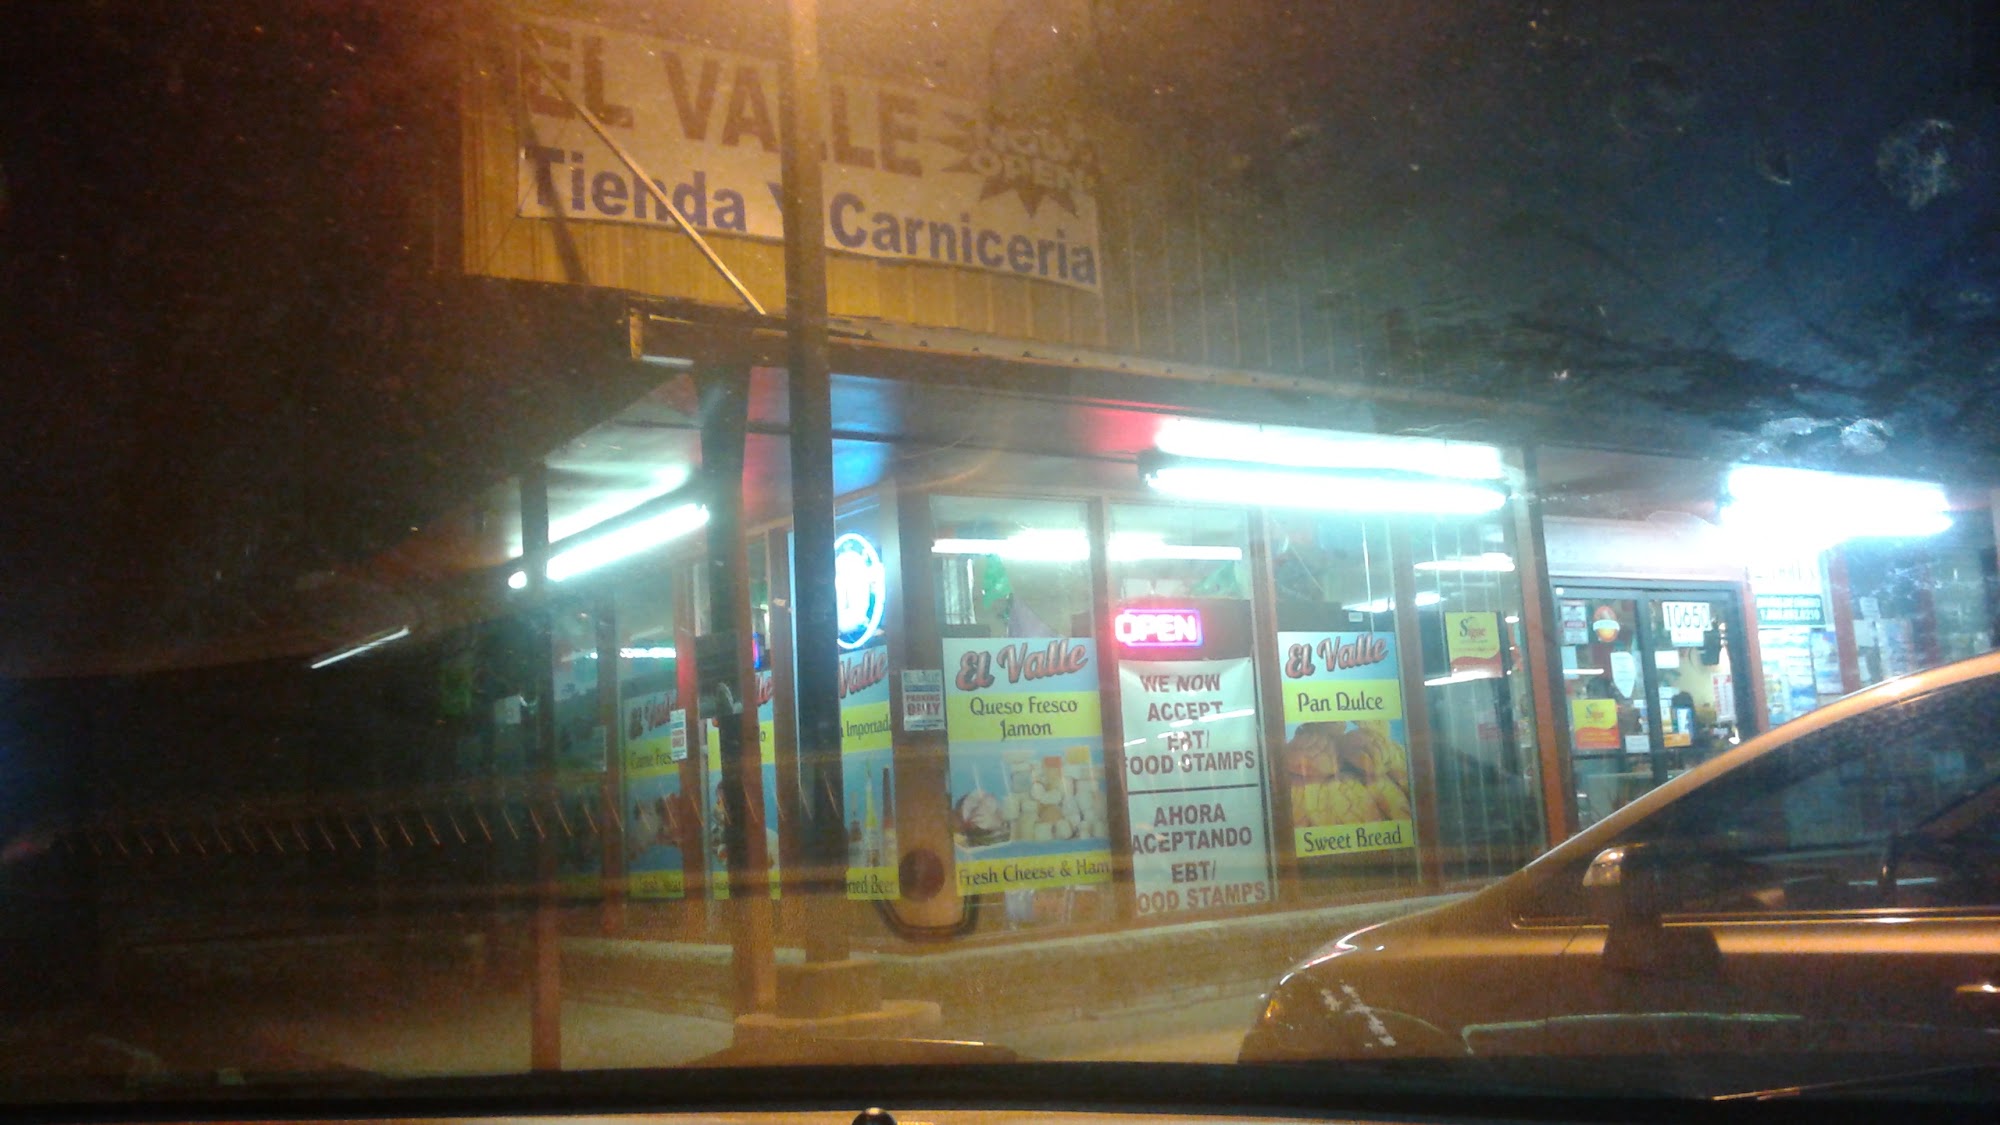 El Valle Tienda Y Carniceria.